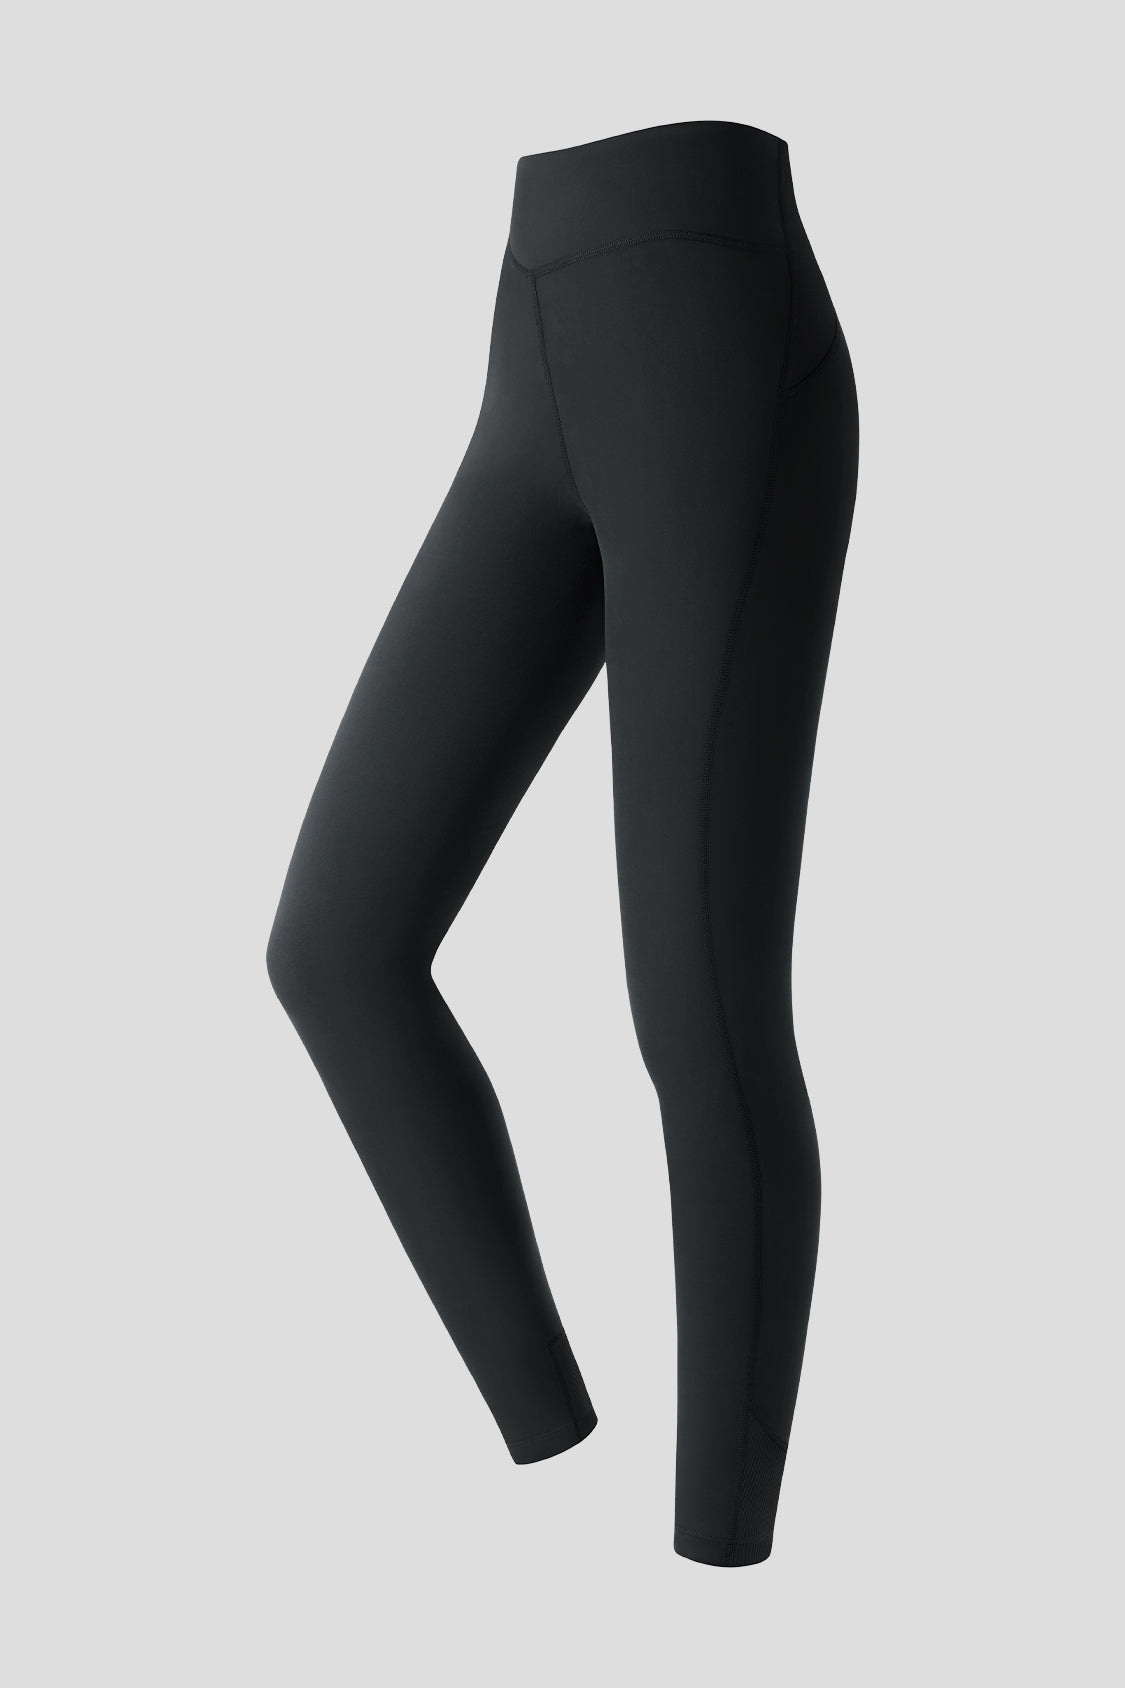 nevica banff women's seamless thermal leggings black UK 16 new in